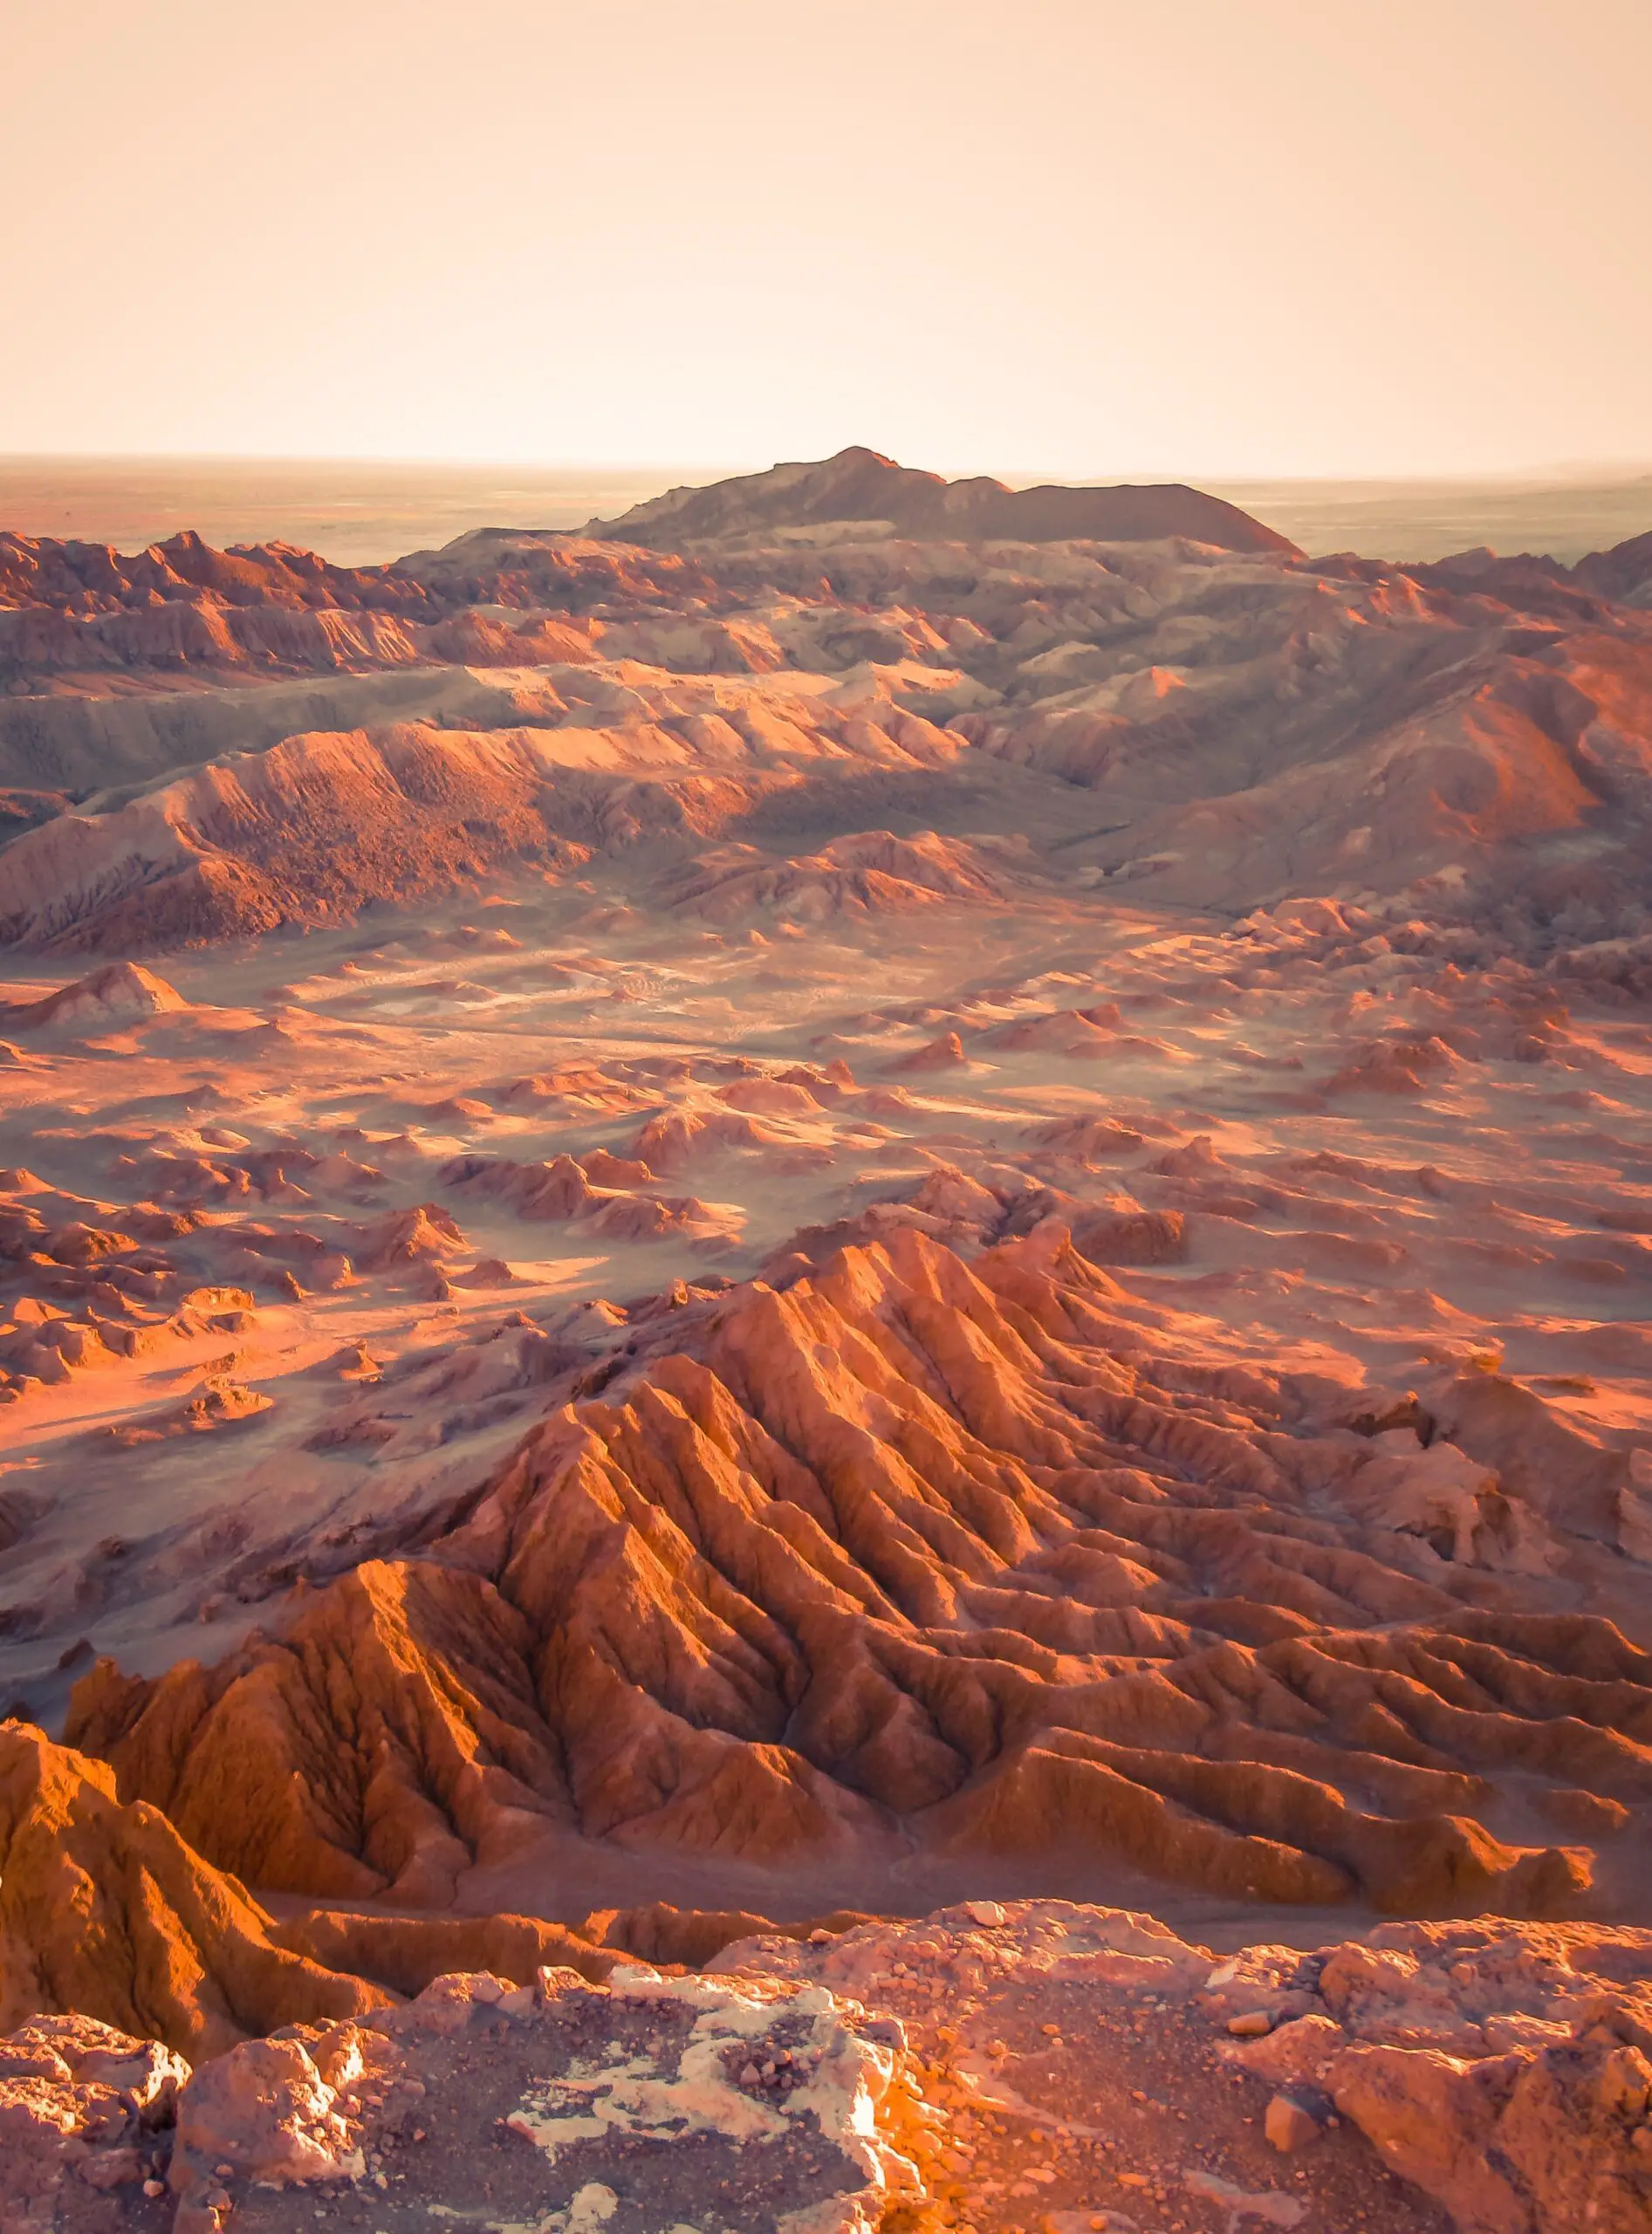 Desierto de Atacama, el lugar más soleado de la Tierra: La radiación solar, tan fuerte aquí como en el planeta